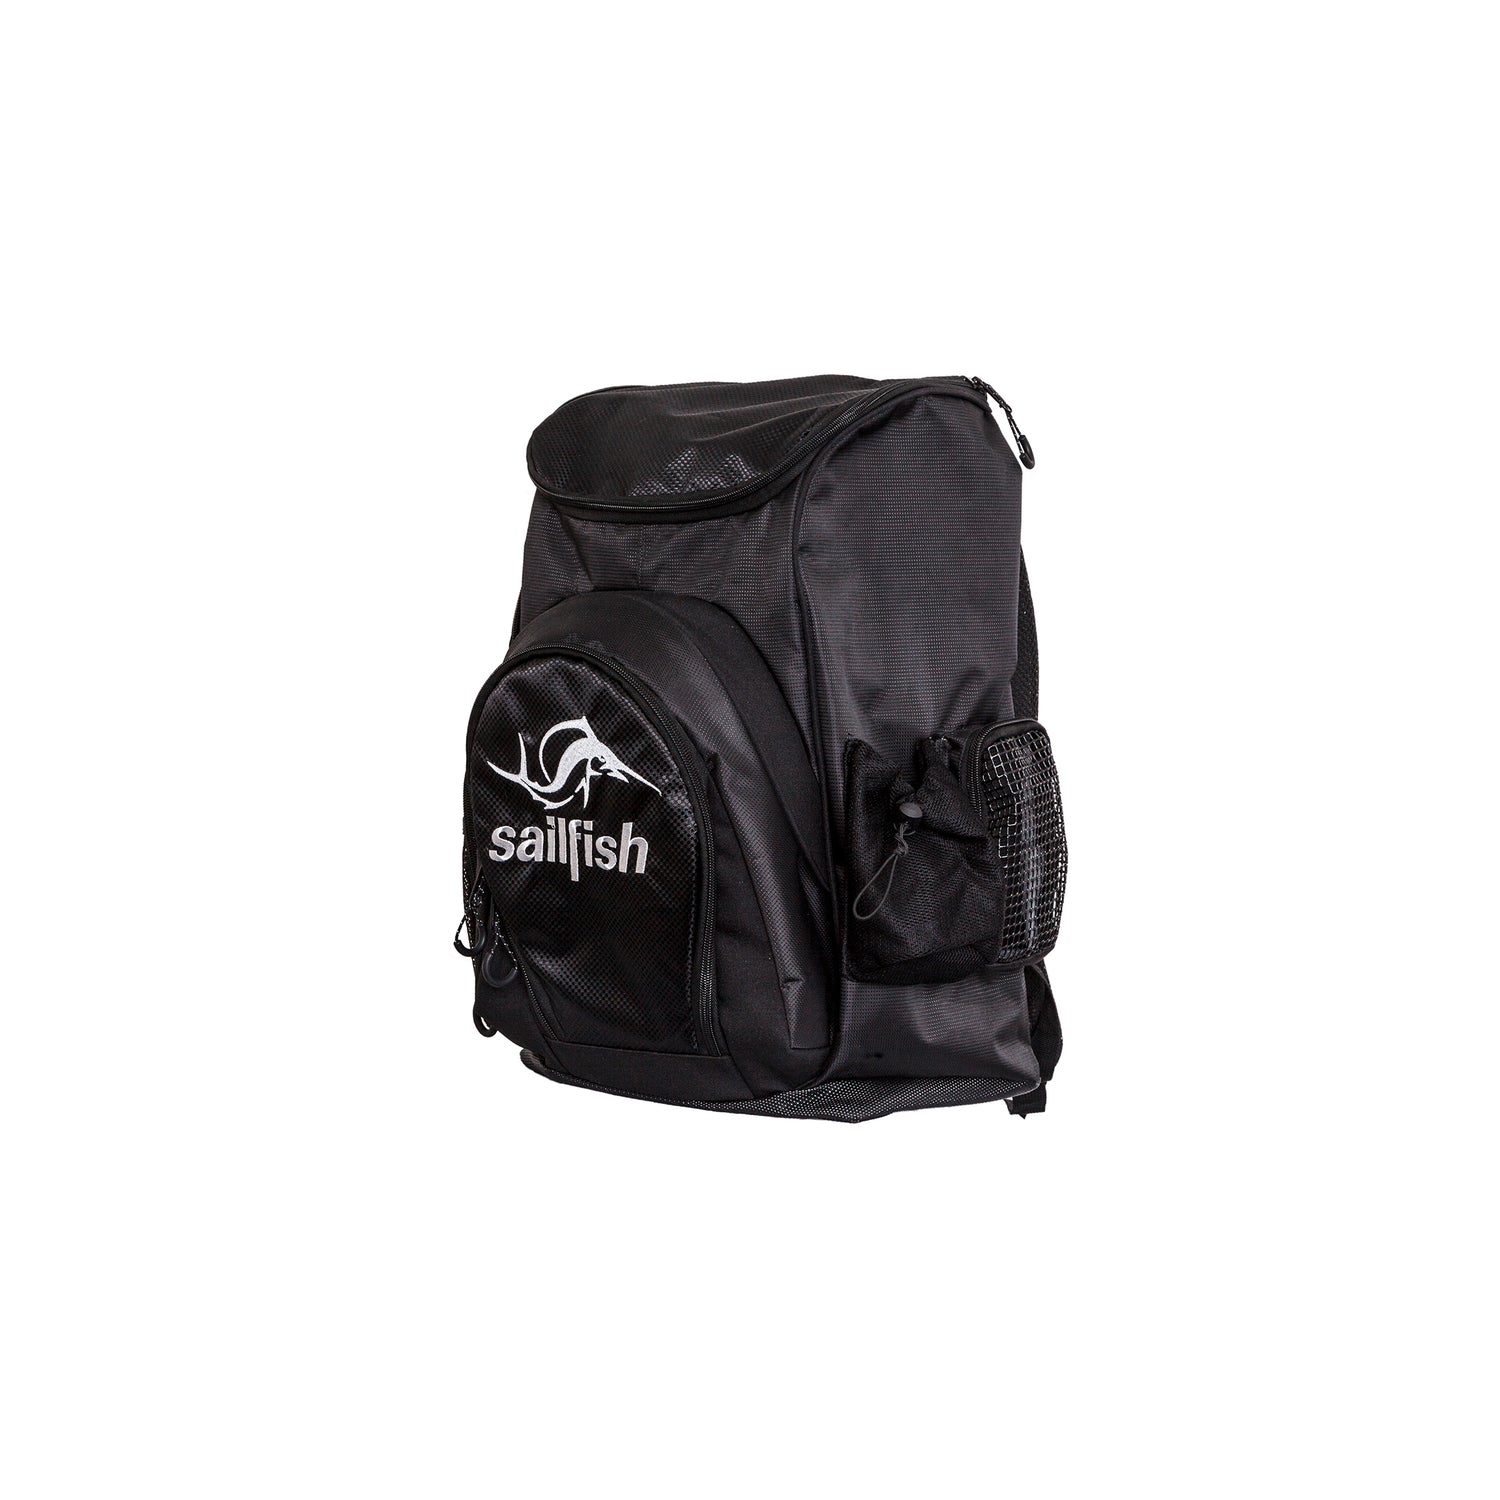 sailfish backpack / change backpack Hawi - sailfish GmbH